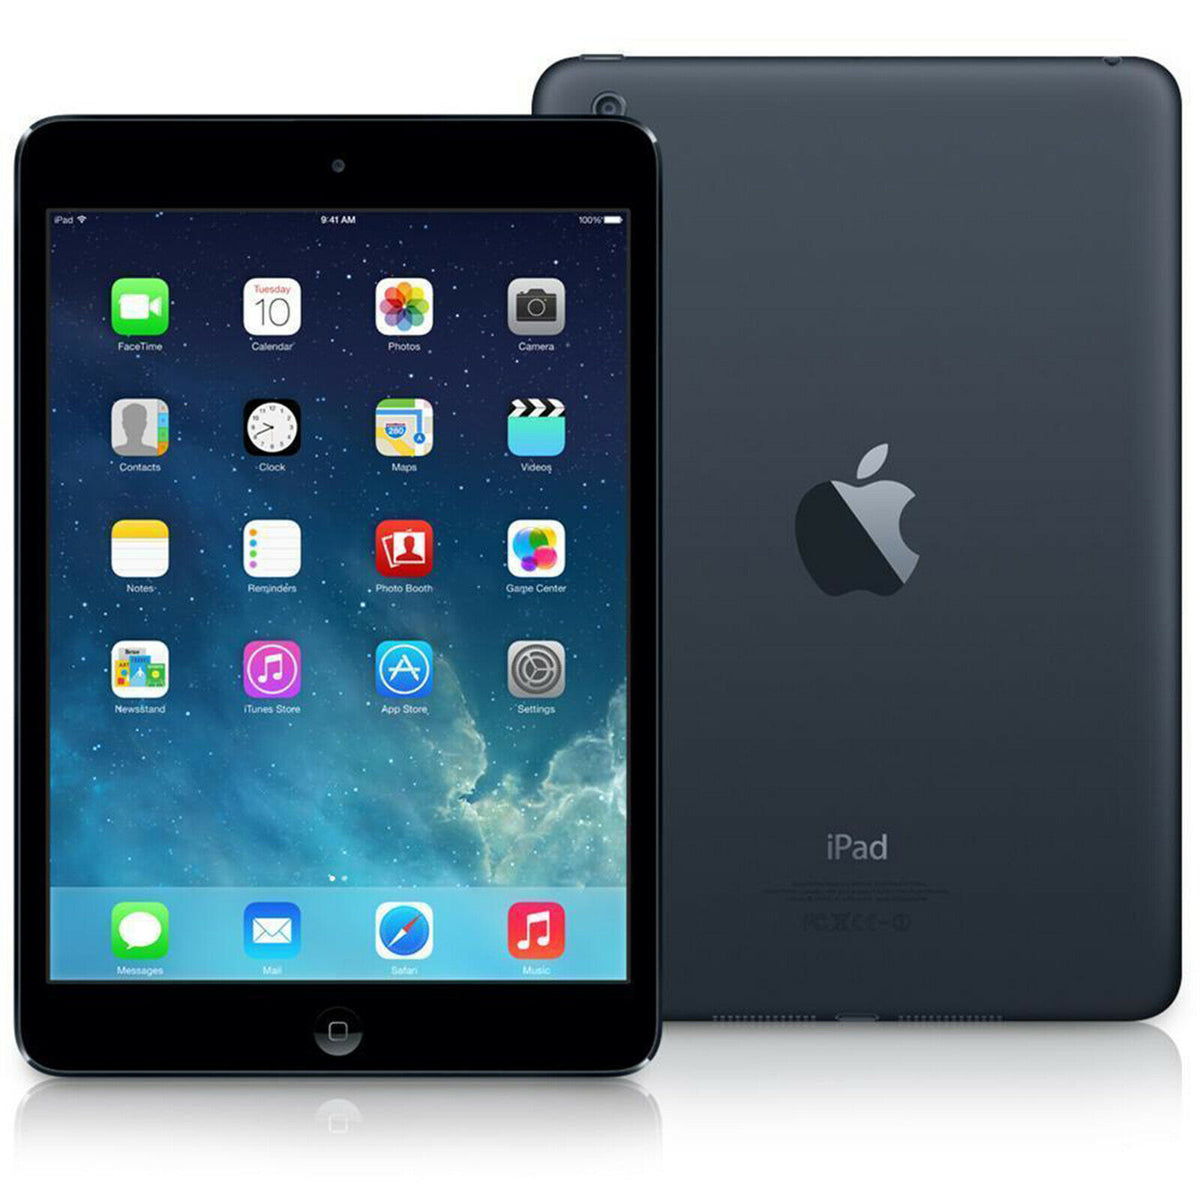 iPad Mini 1st Generation – Flex Mobile